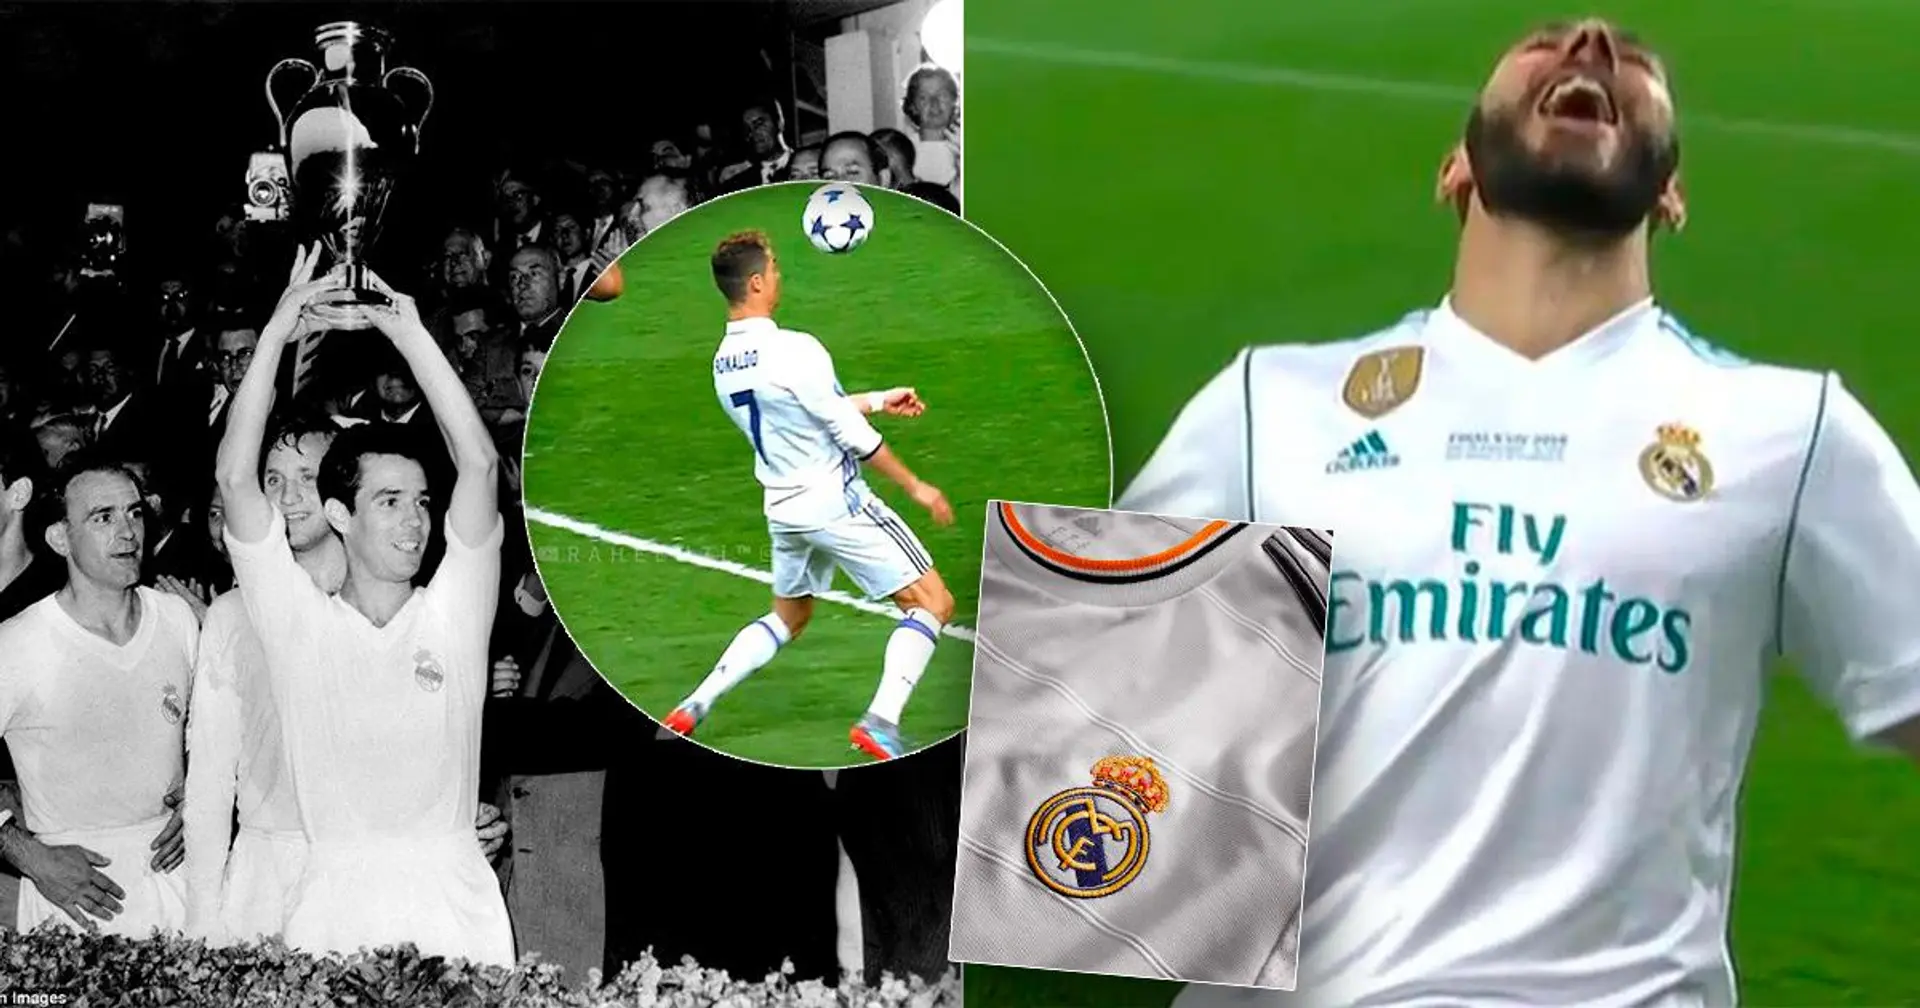 ¿Por qué juega de blanco el Real Madrid? Tú preguntaste - nosotros respondimos